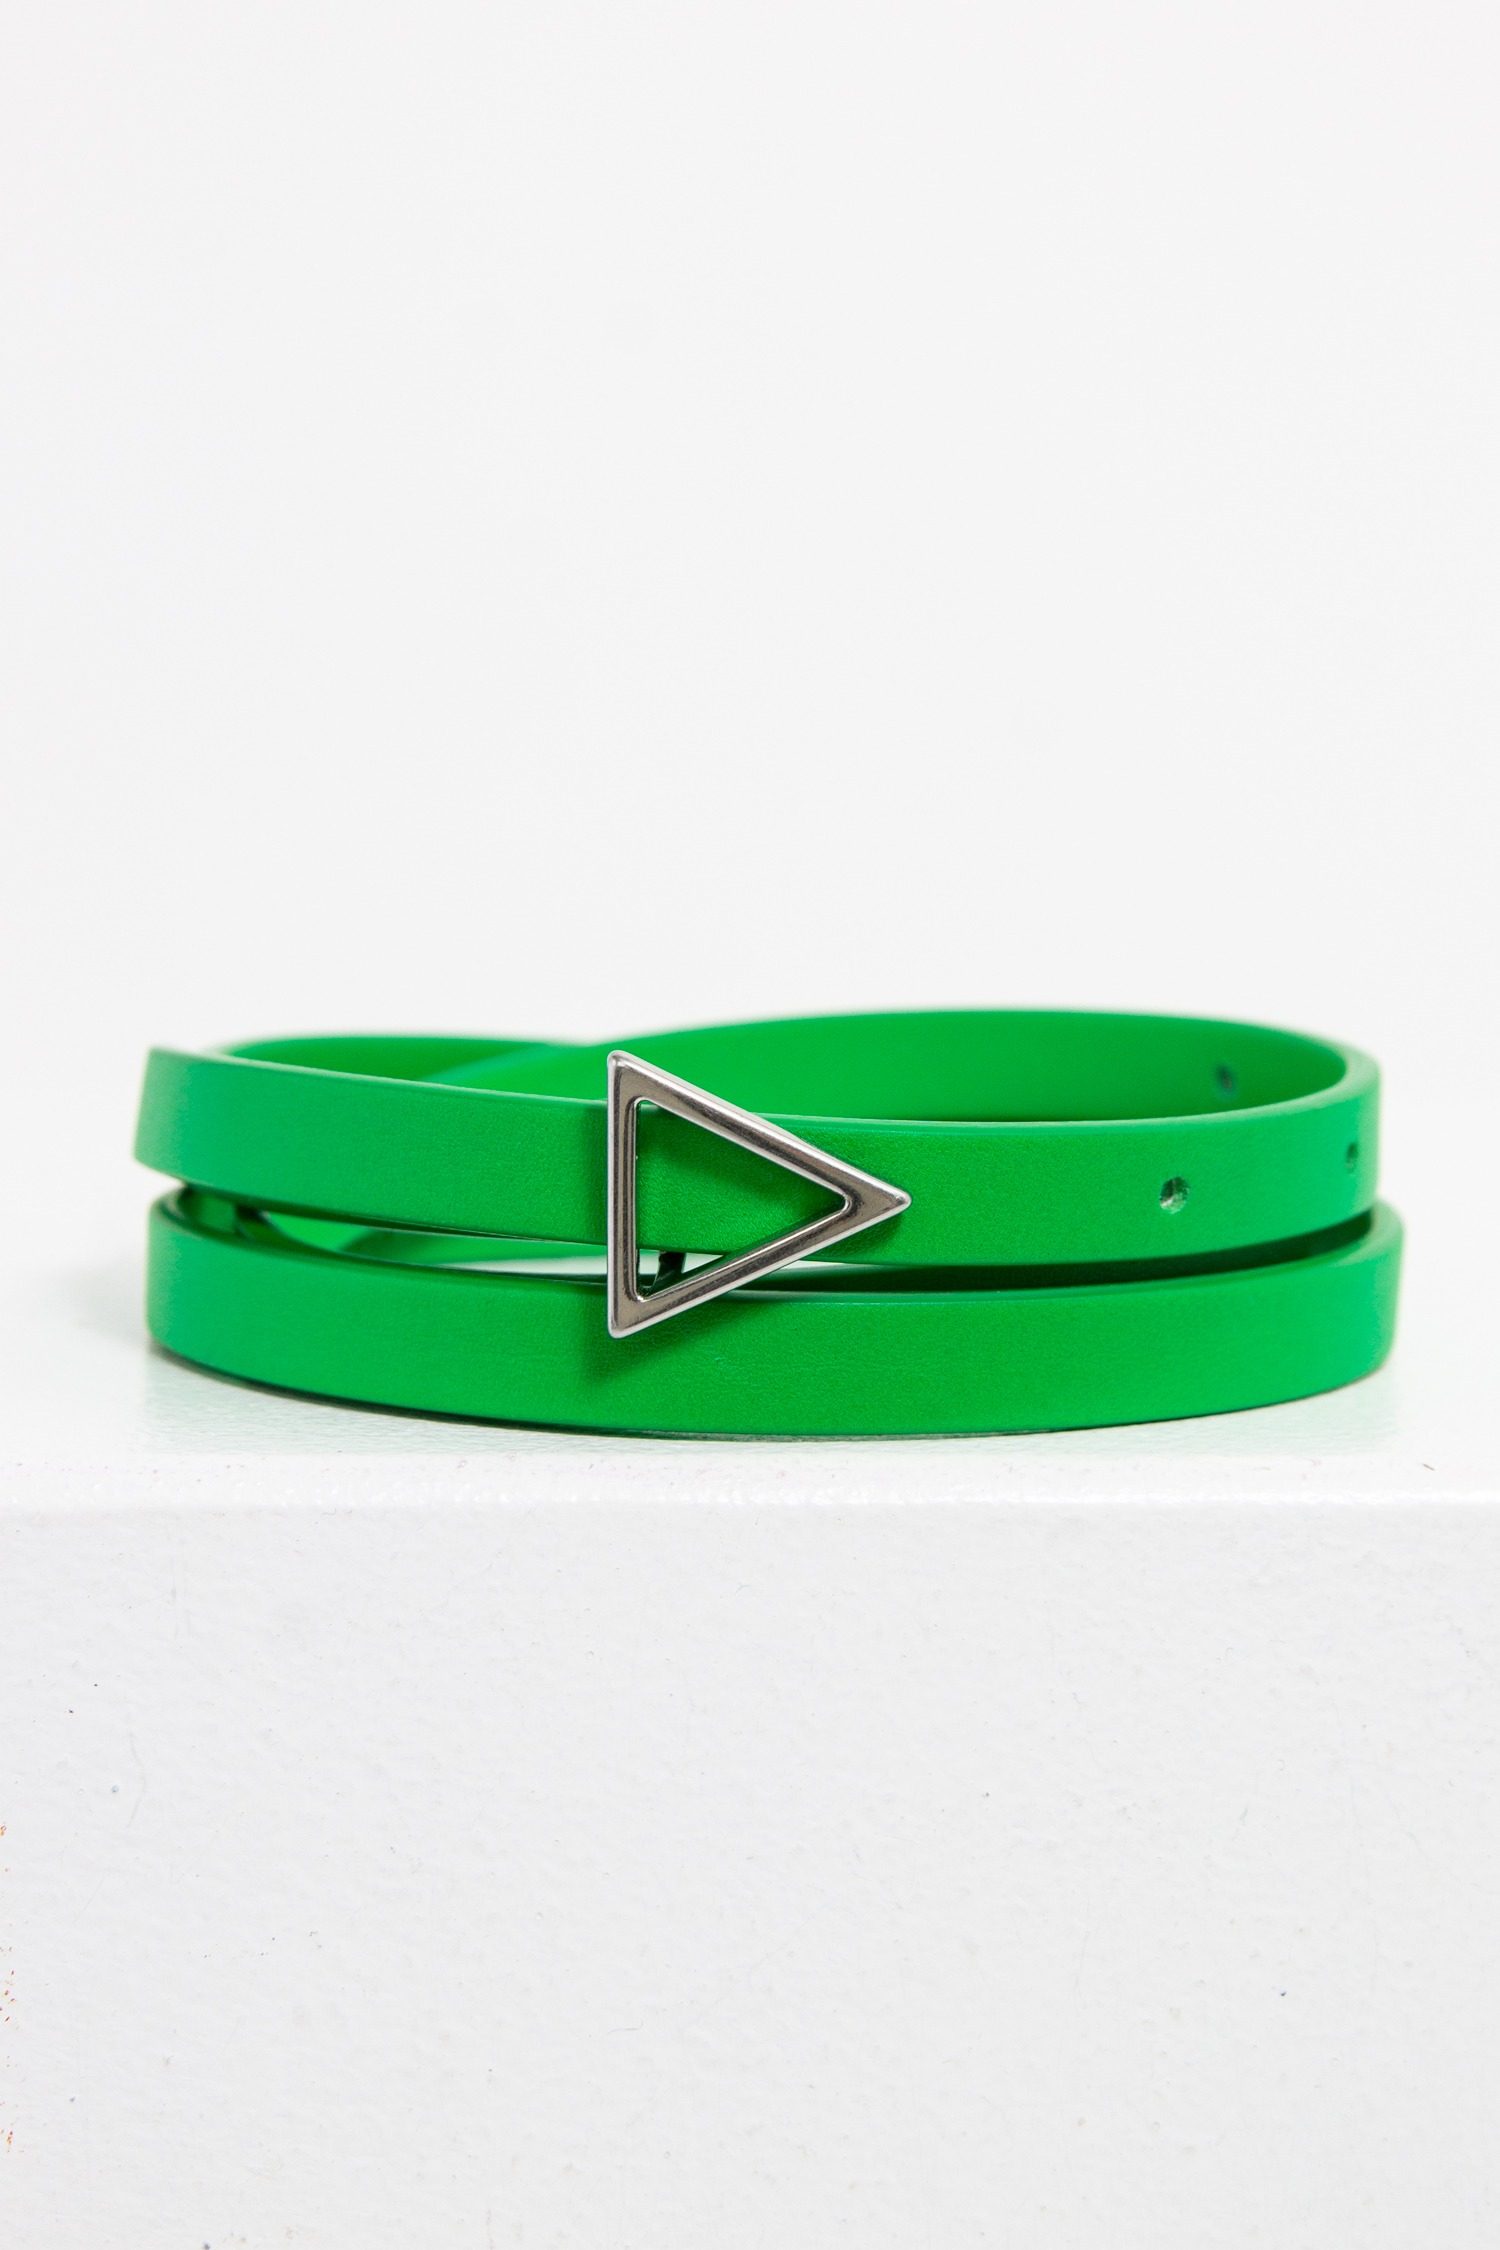 Bottega Veneta schmaler “Triangle” Gürtel in grün